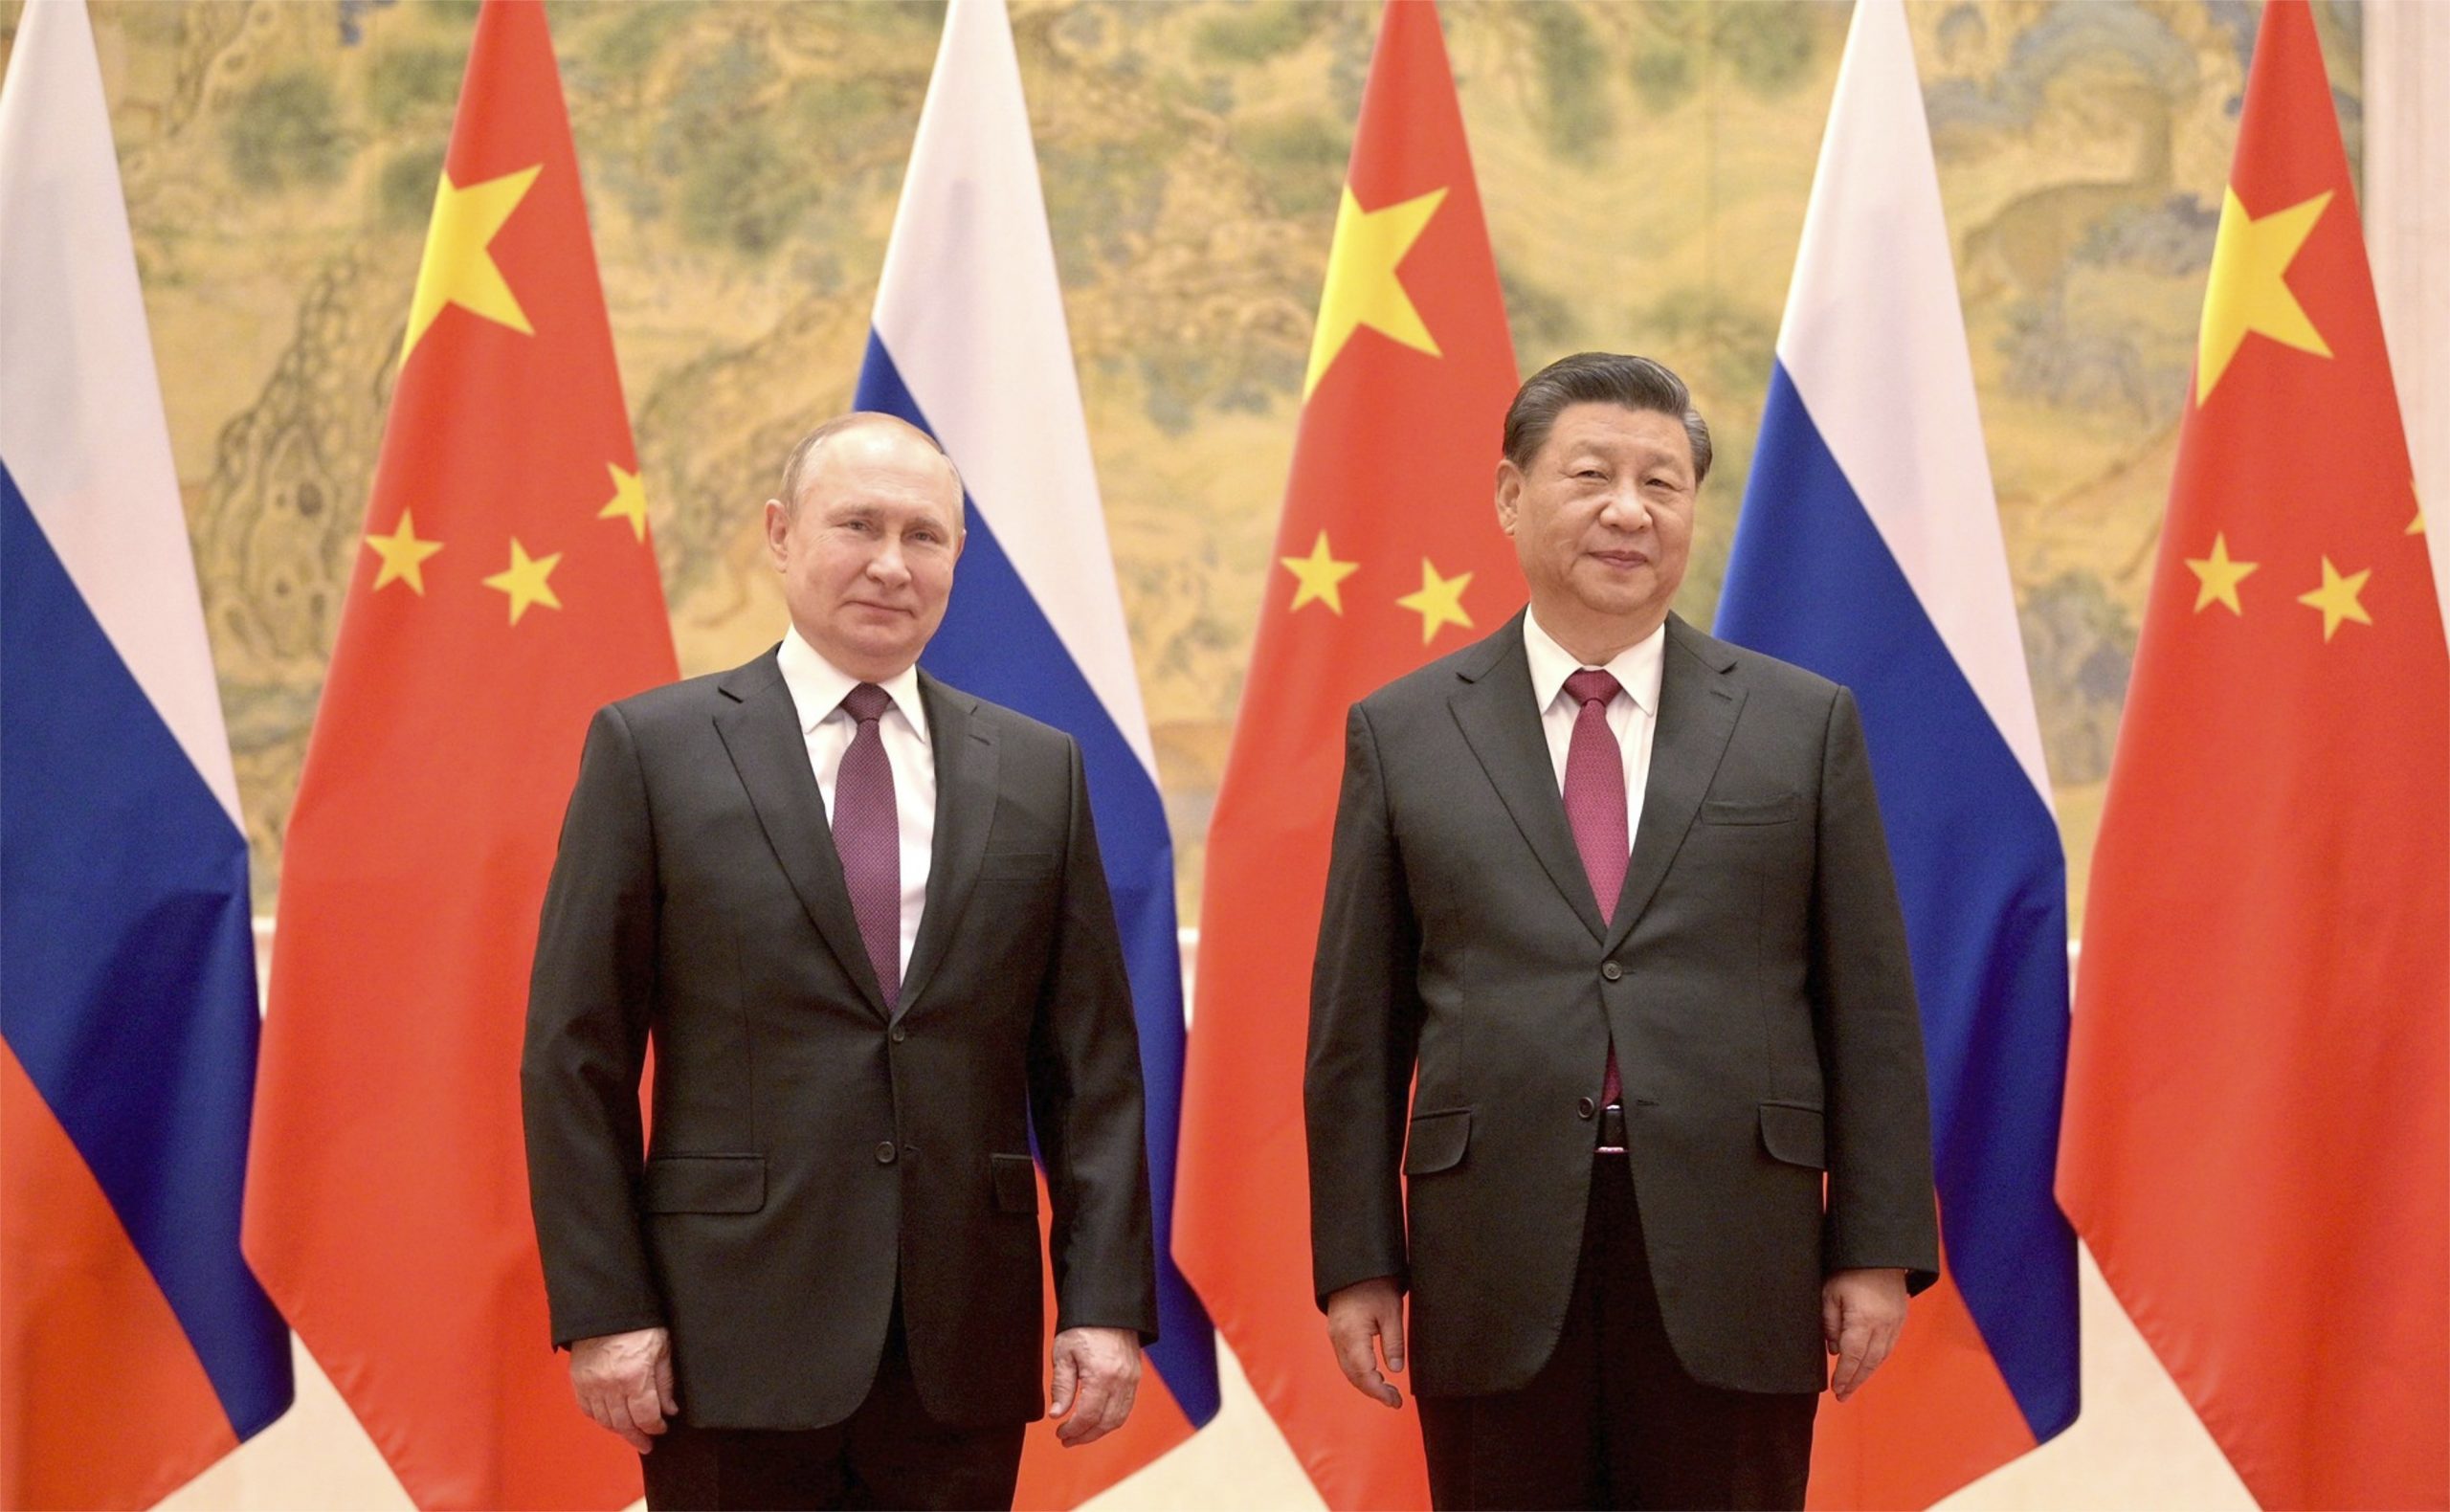 220908 Russia-Cina-Putin-Xi- gasdotto